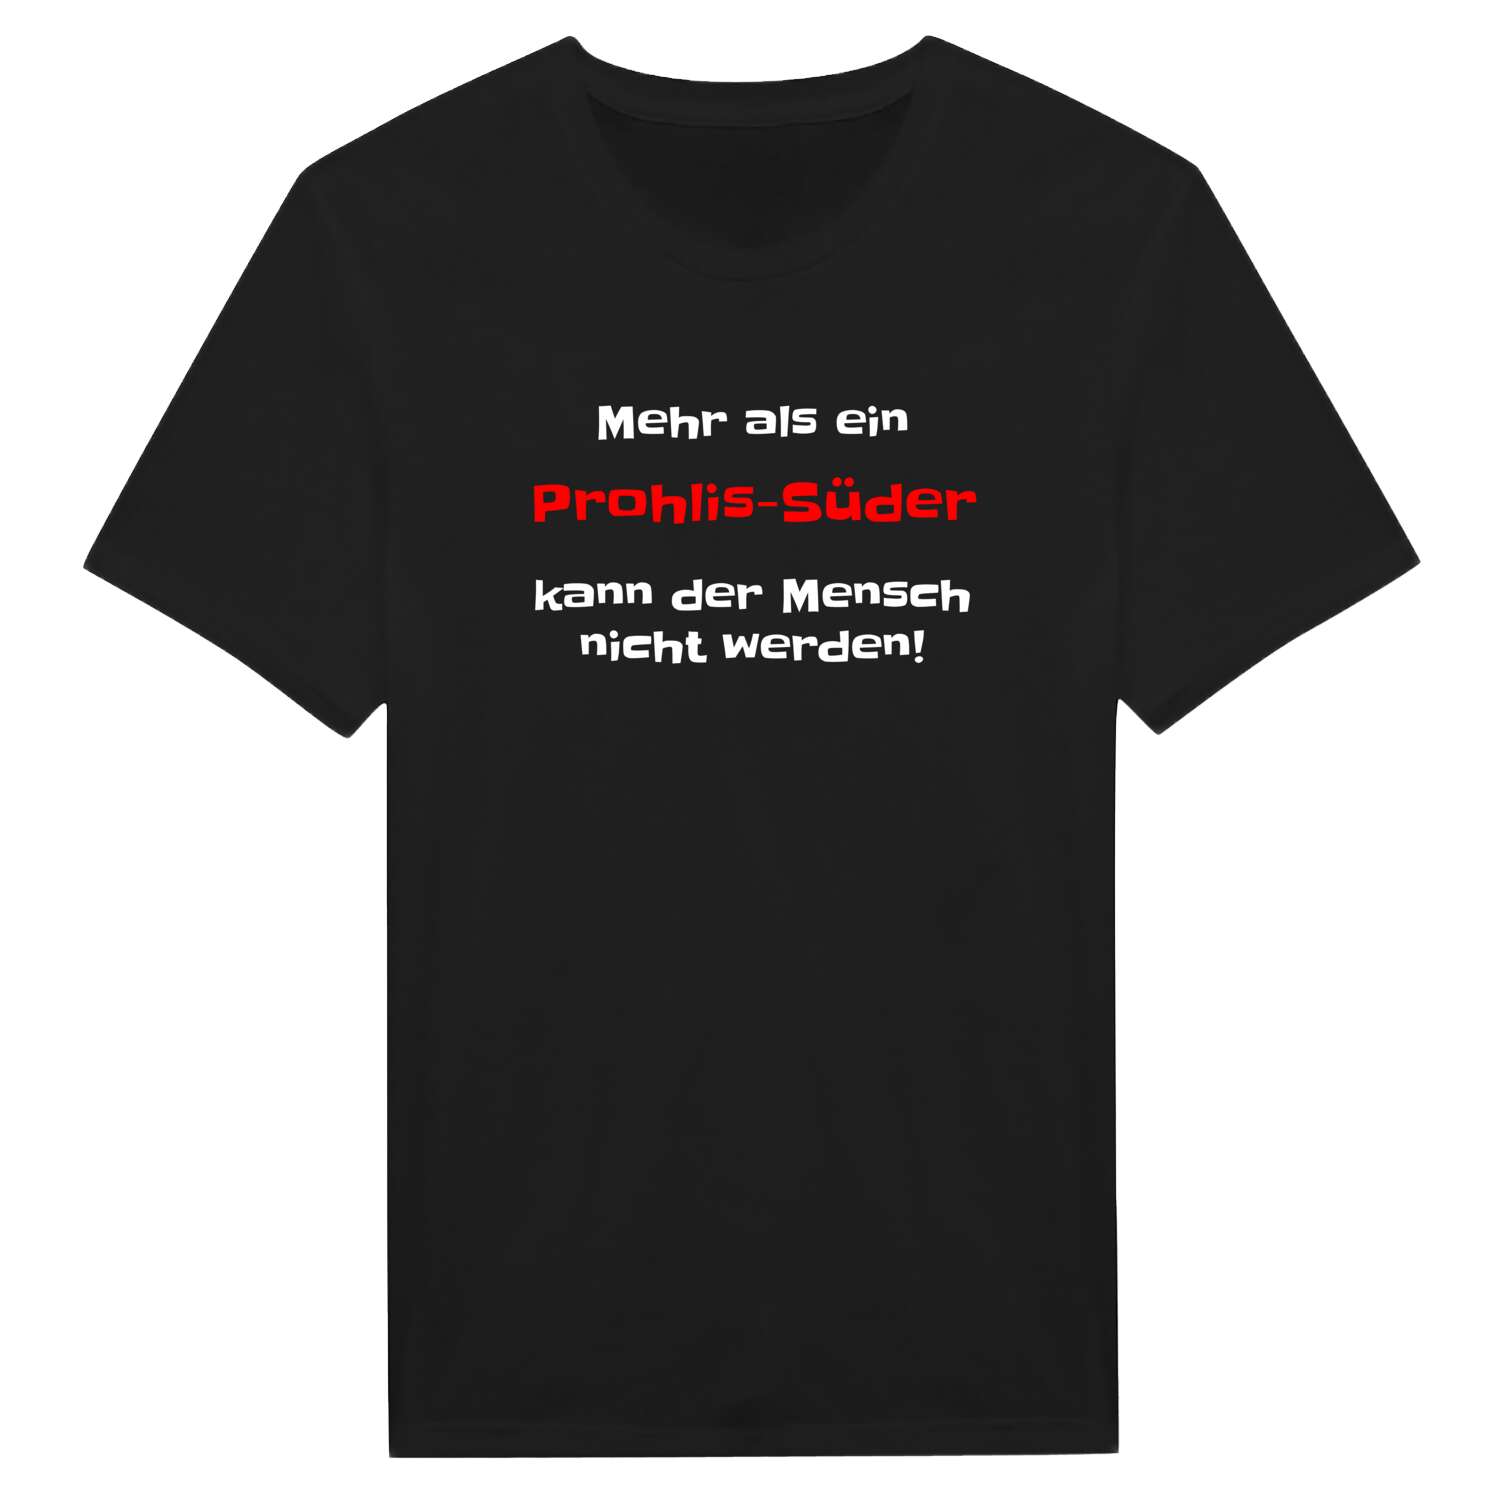 Prohlis-Süd T-Shirt »Mehr als ein«